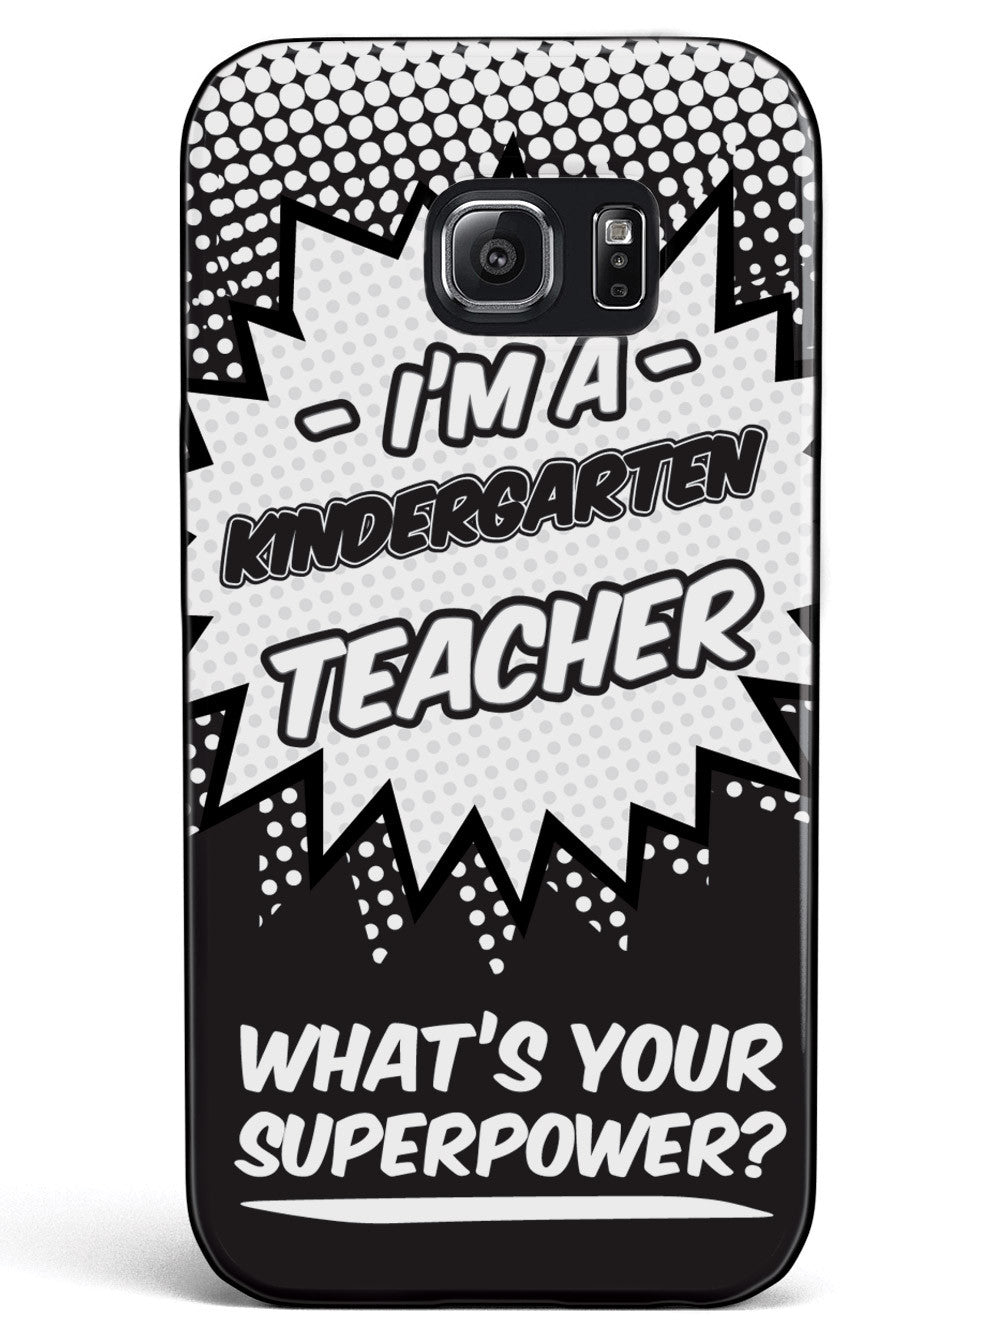 Kindergarten Teacher - What's Your Superpower? Case